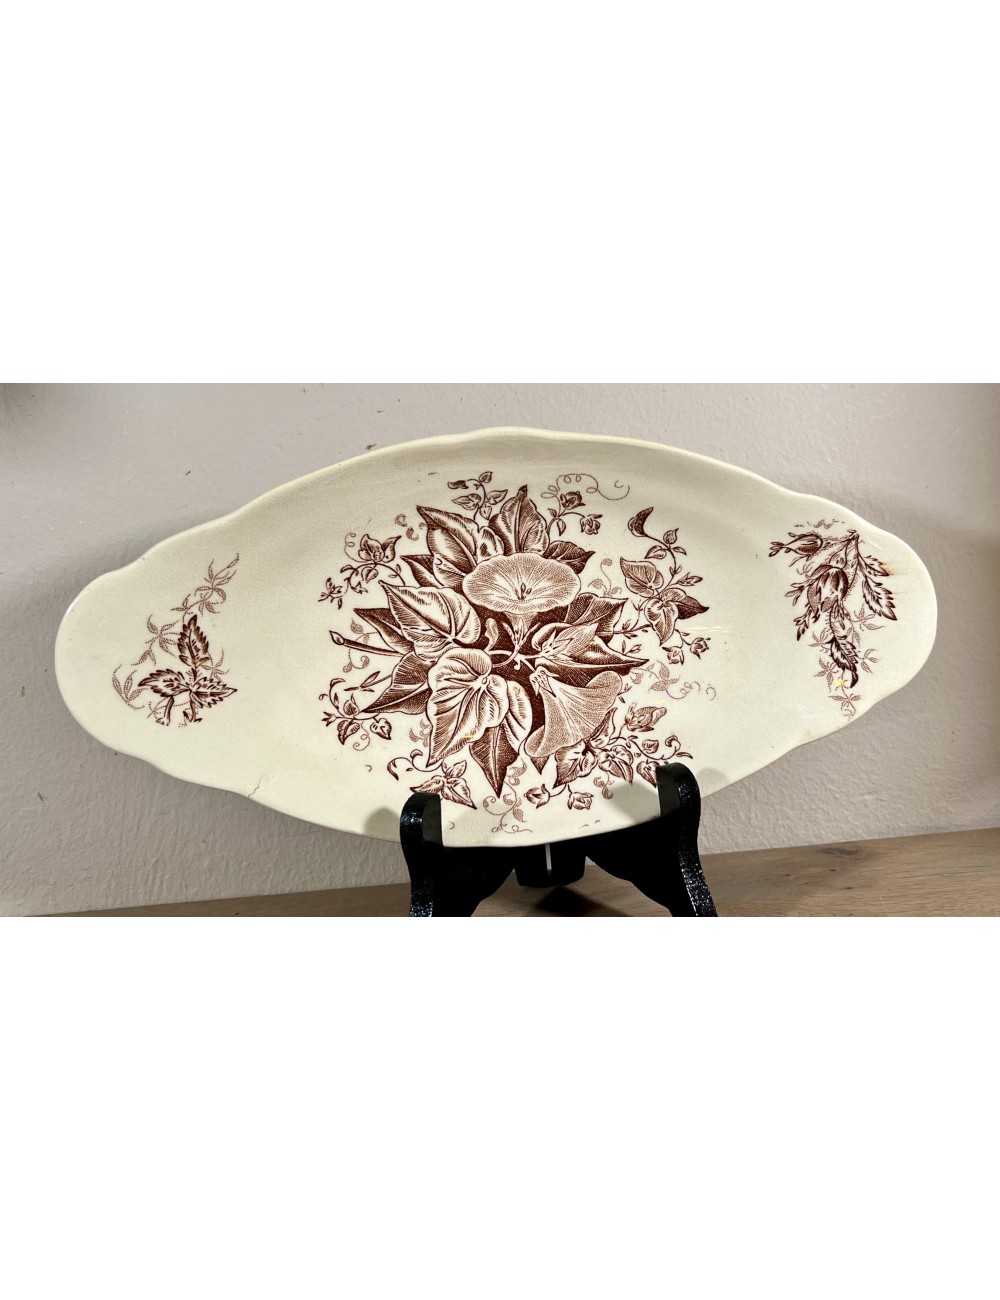 Zuurschaal / Ravier - langwerpig model - ongemerkt - décor van kelkbloemen/klokjesbloemen